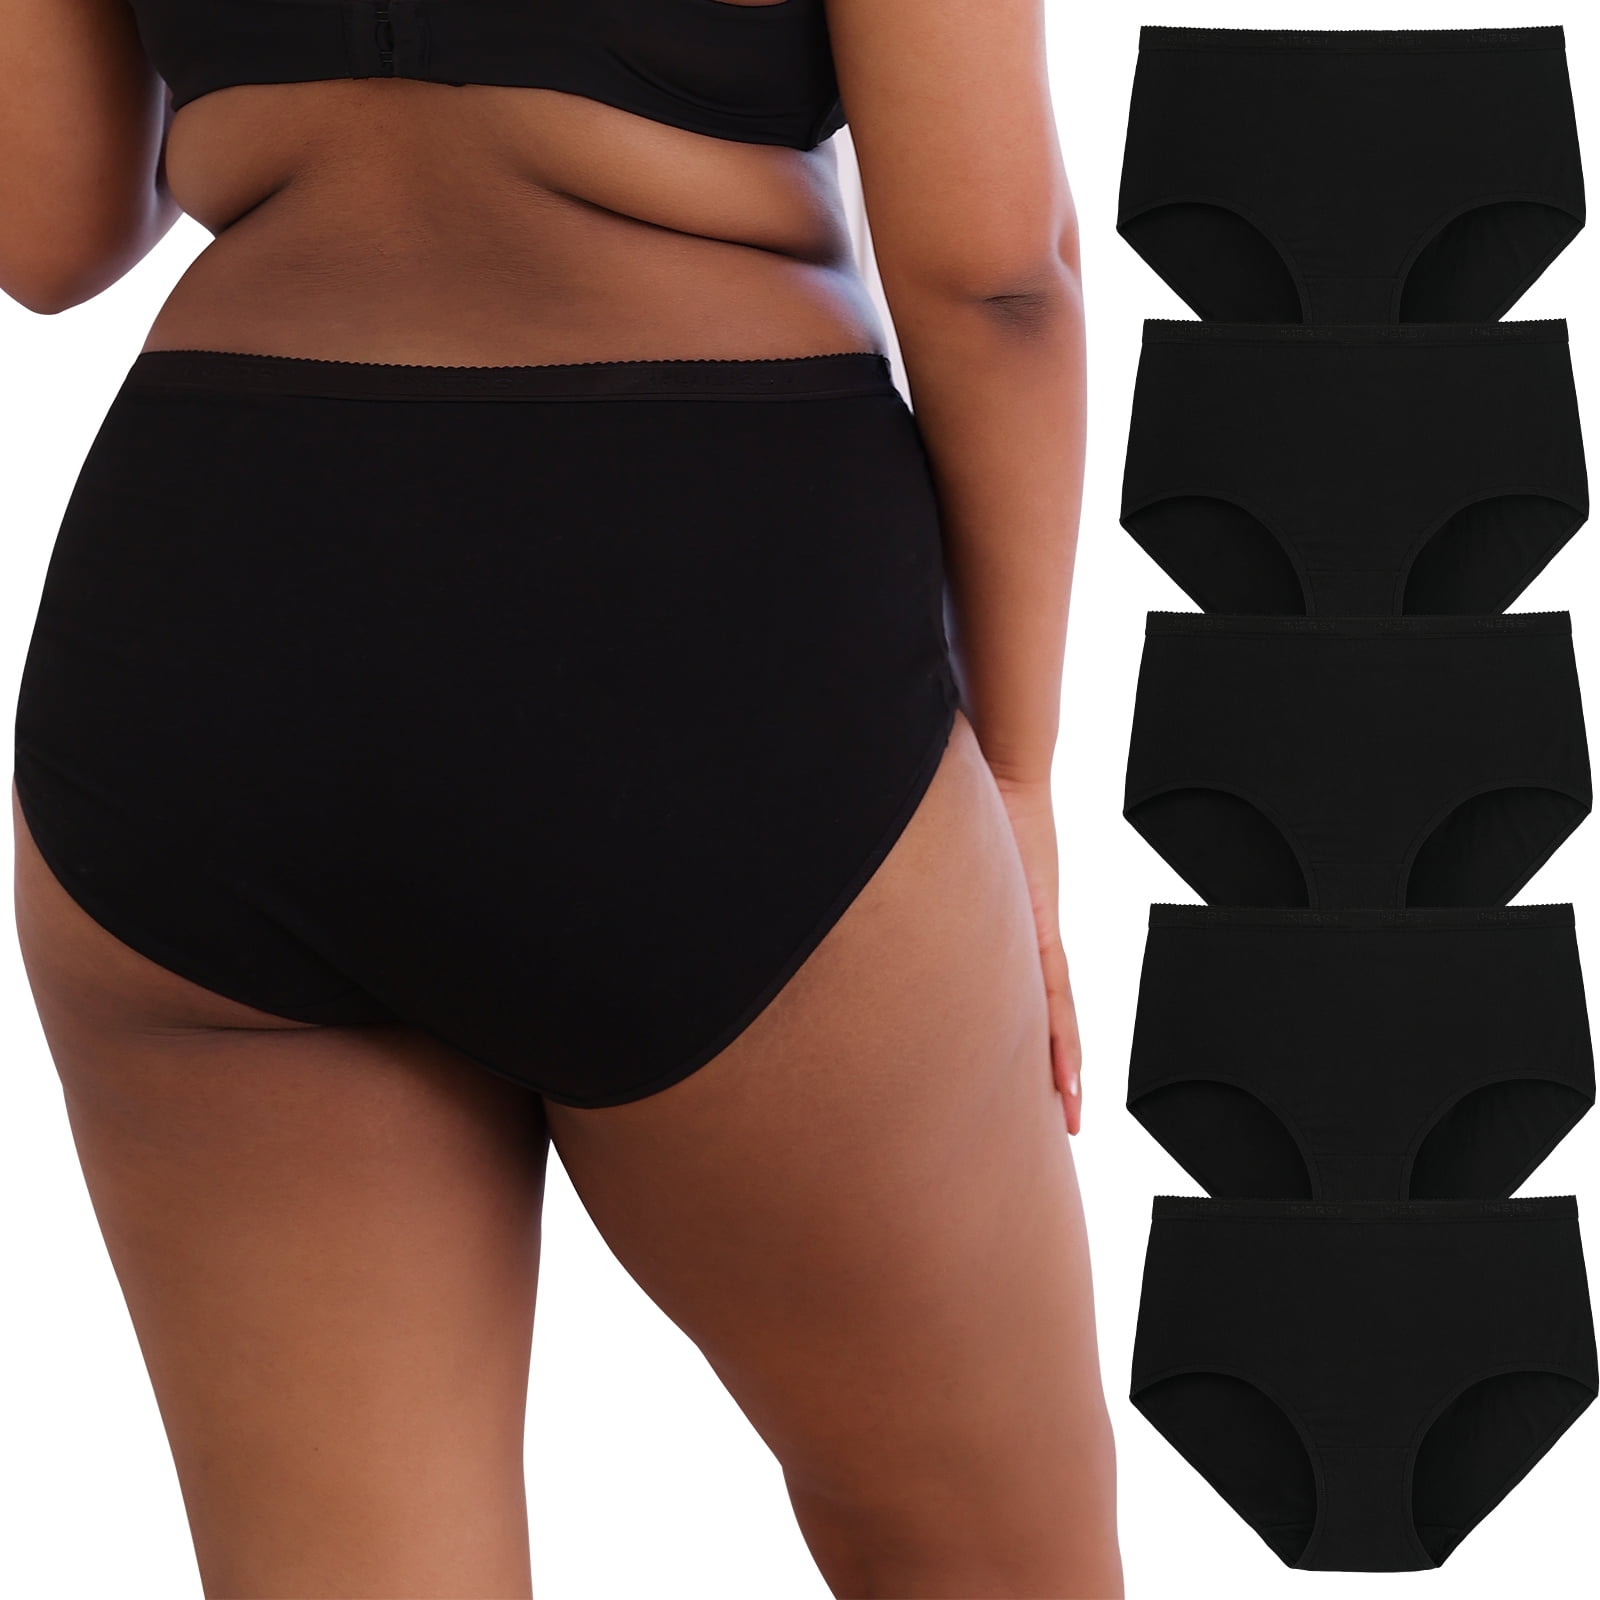 wirarpa Women's Underwear High Waist Briefs Ladies Plus Size Panties 4 Pack  Sizes 5-10